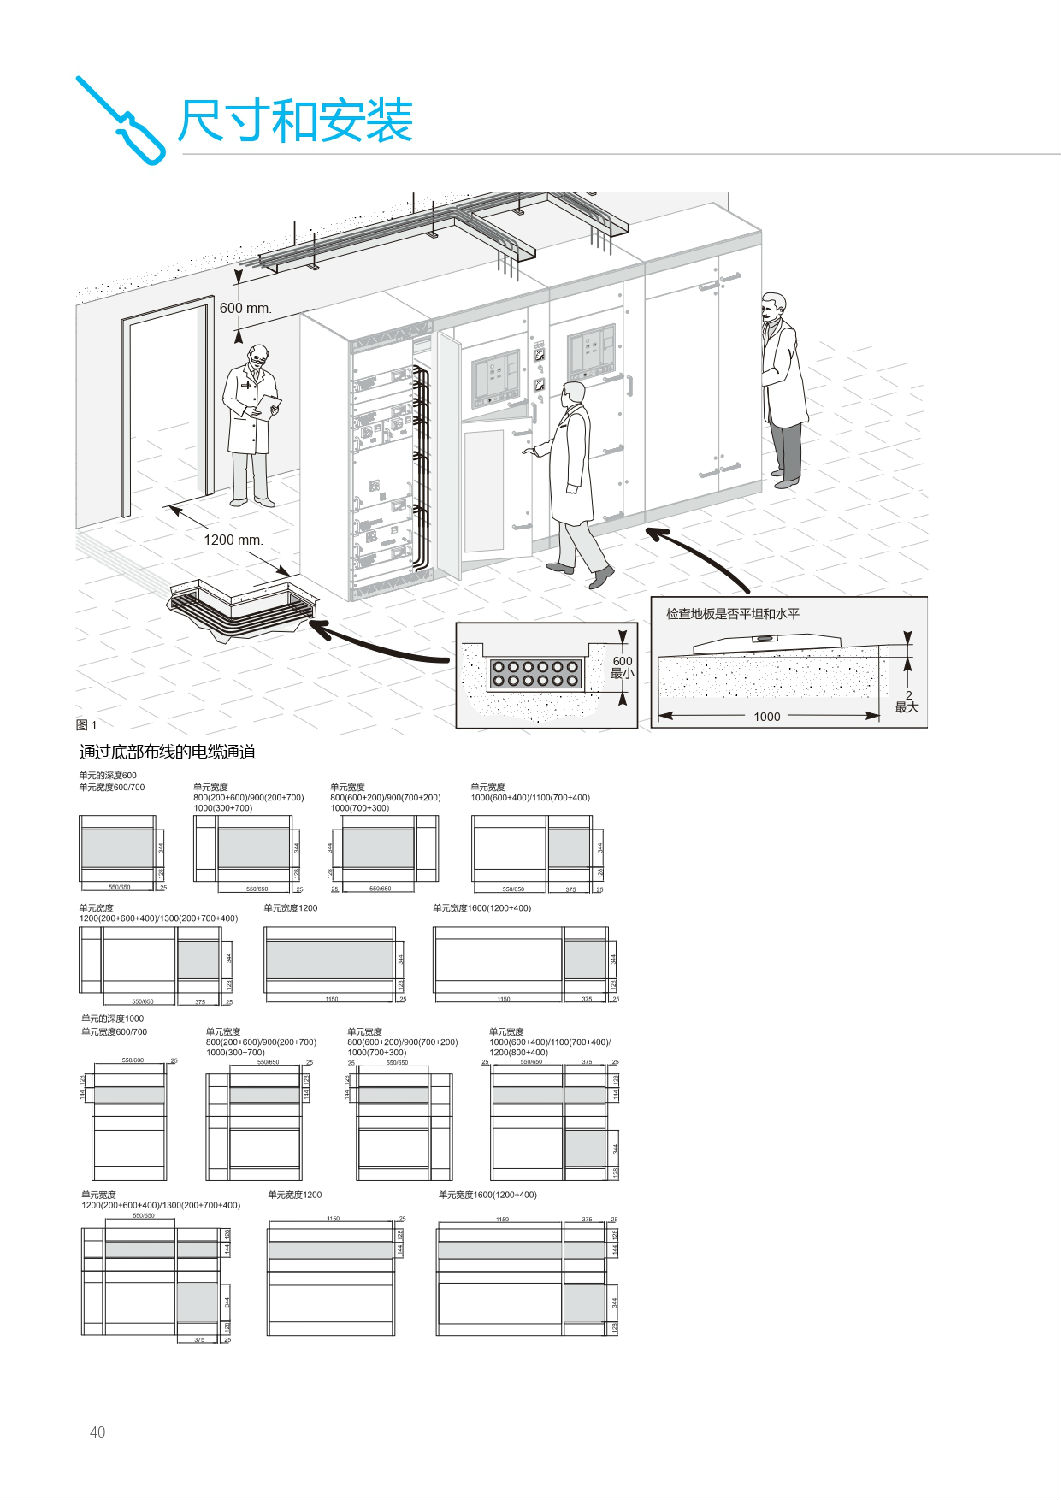 施耐德Blokset低压柜尺寸和安装图   安徽得润电气提供